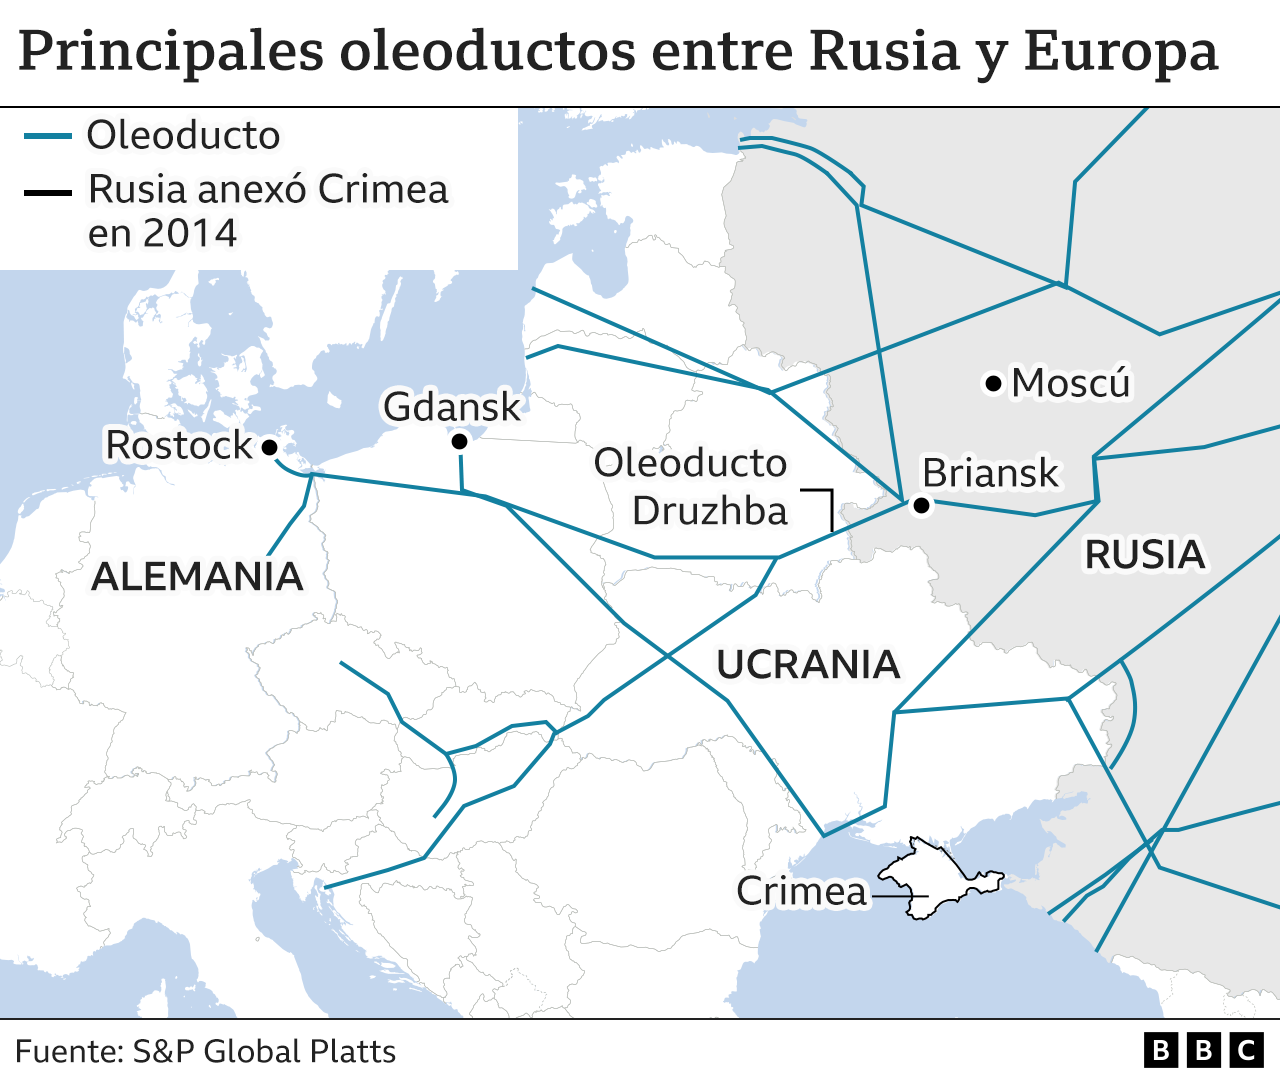 Mapa de principales oleoductos entre Rusia y Europa.